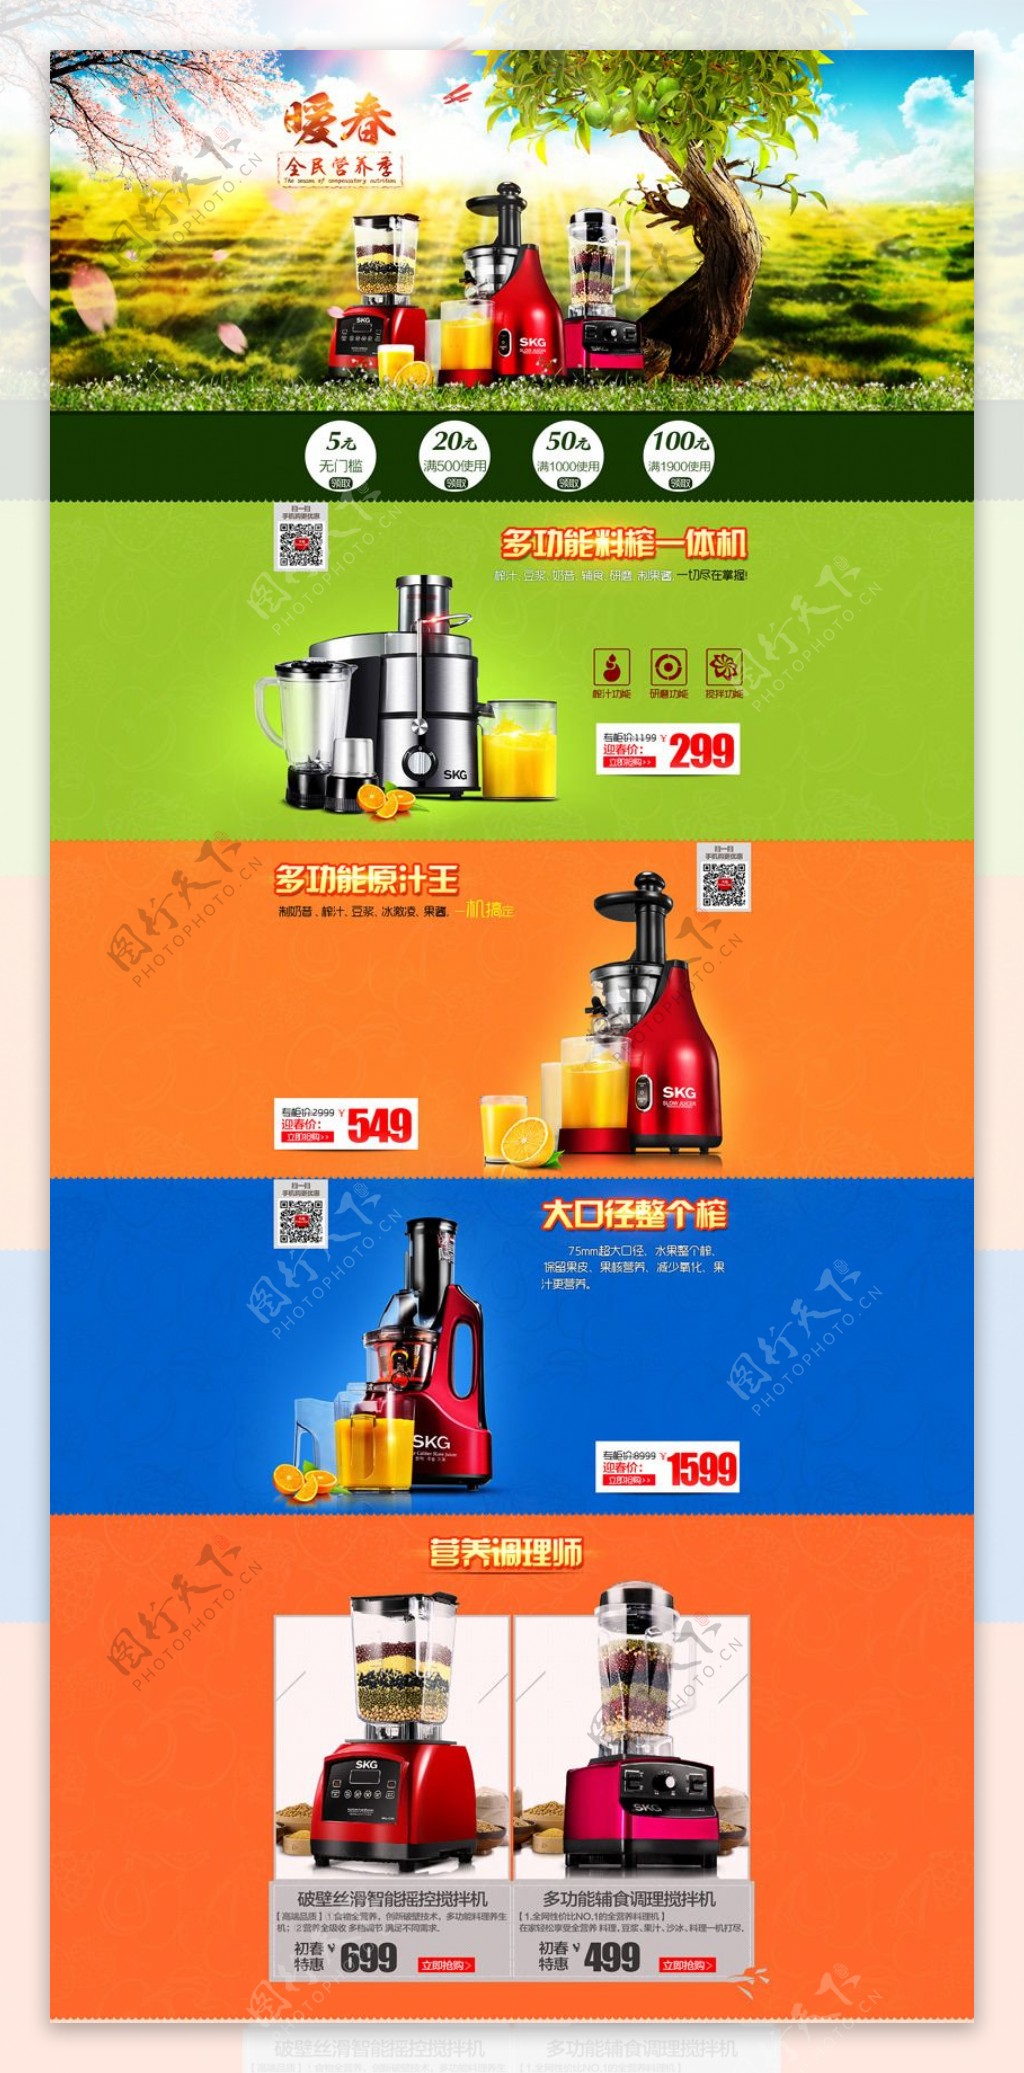 淘宝果汁机榨汁机促销页面设计PSD素材